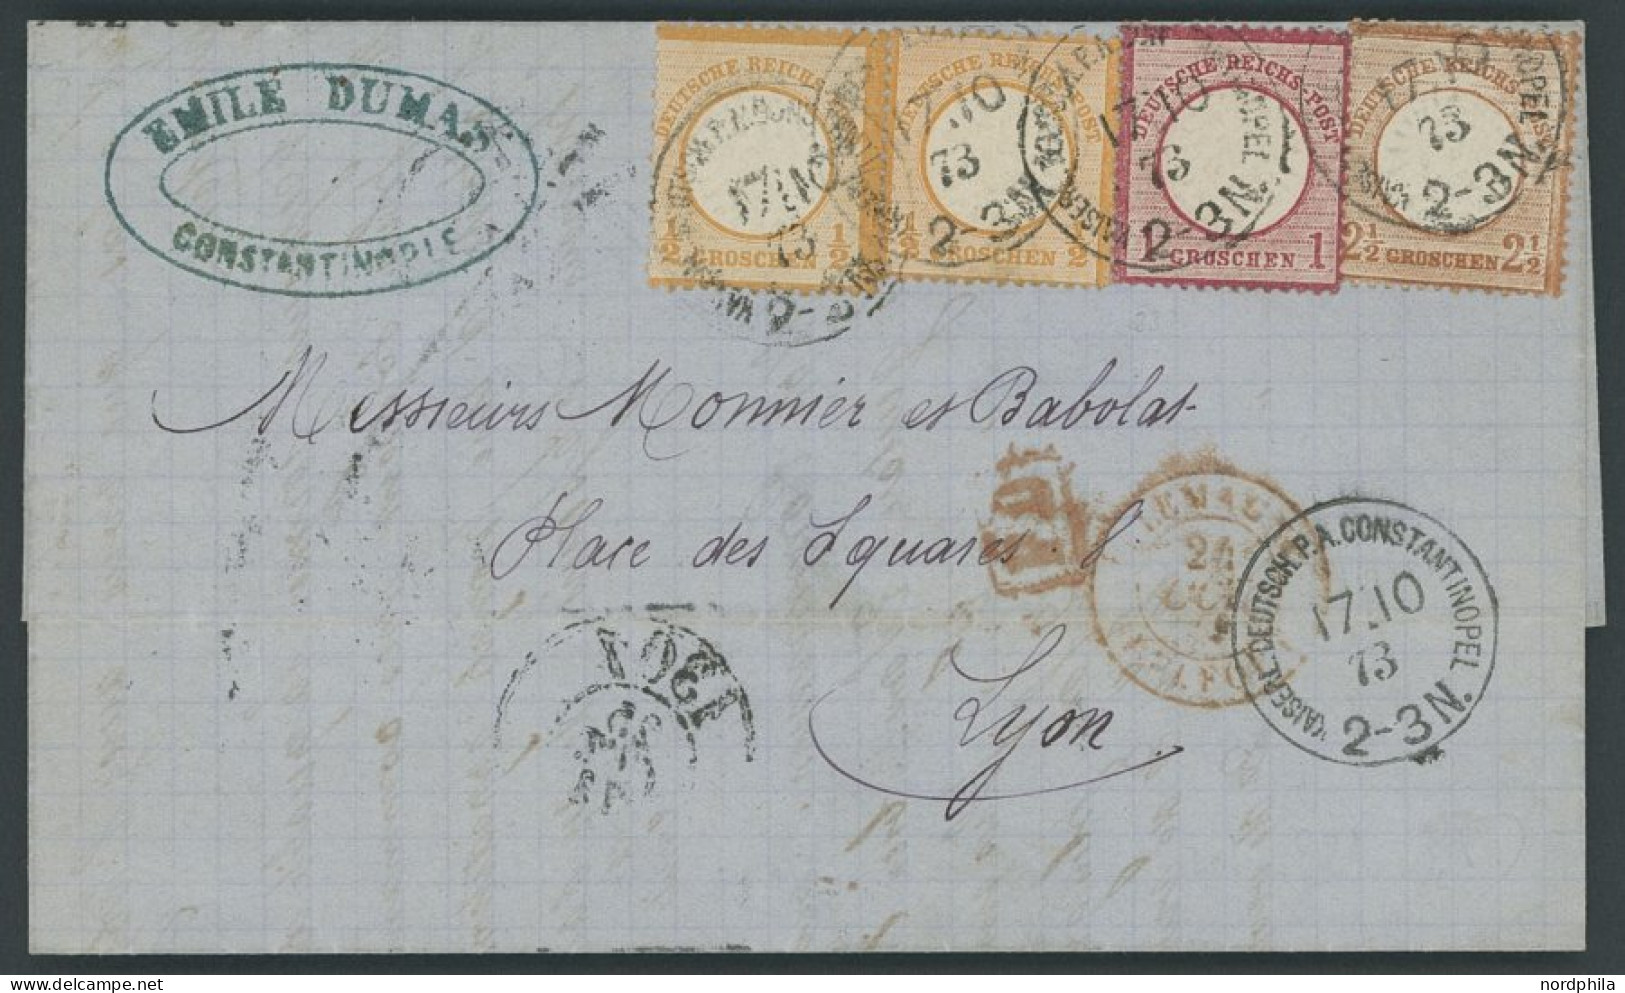 DP TÜRKEI V 18,19,21a BRIEF, 17.10.1873, 1/2 Gr. (2x Kleine Marke) Mit 1 Gr. Und 21/2 Gr. Großer Brustschild Auf Brief ü - Deutsche Post In Der Türkei